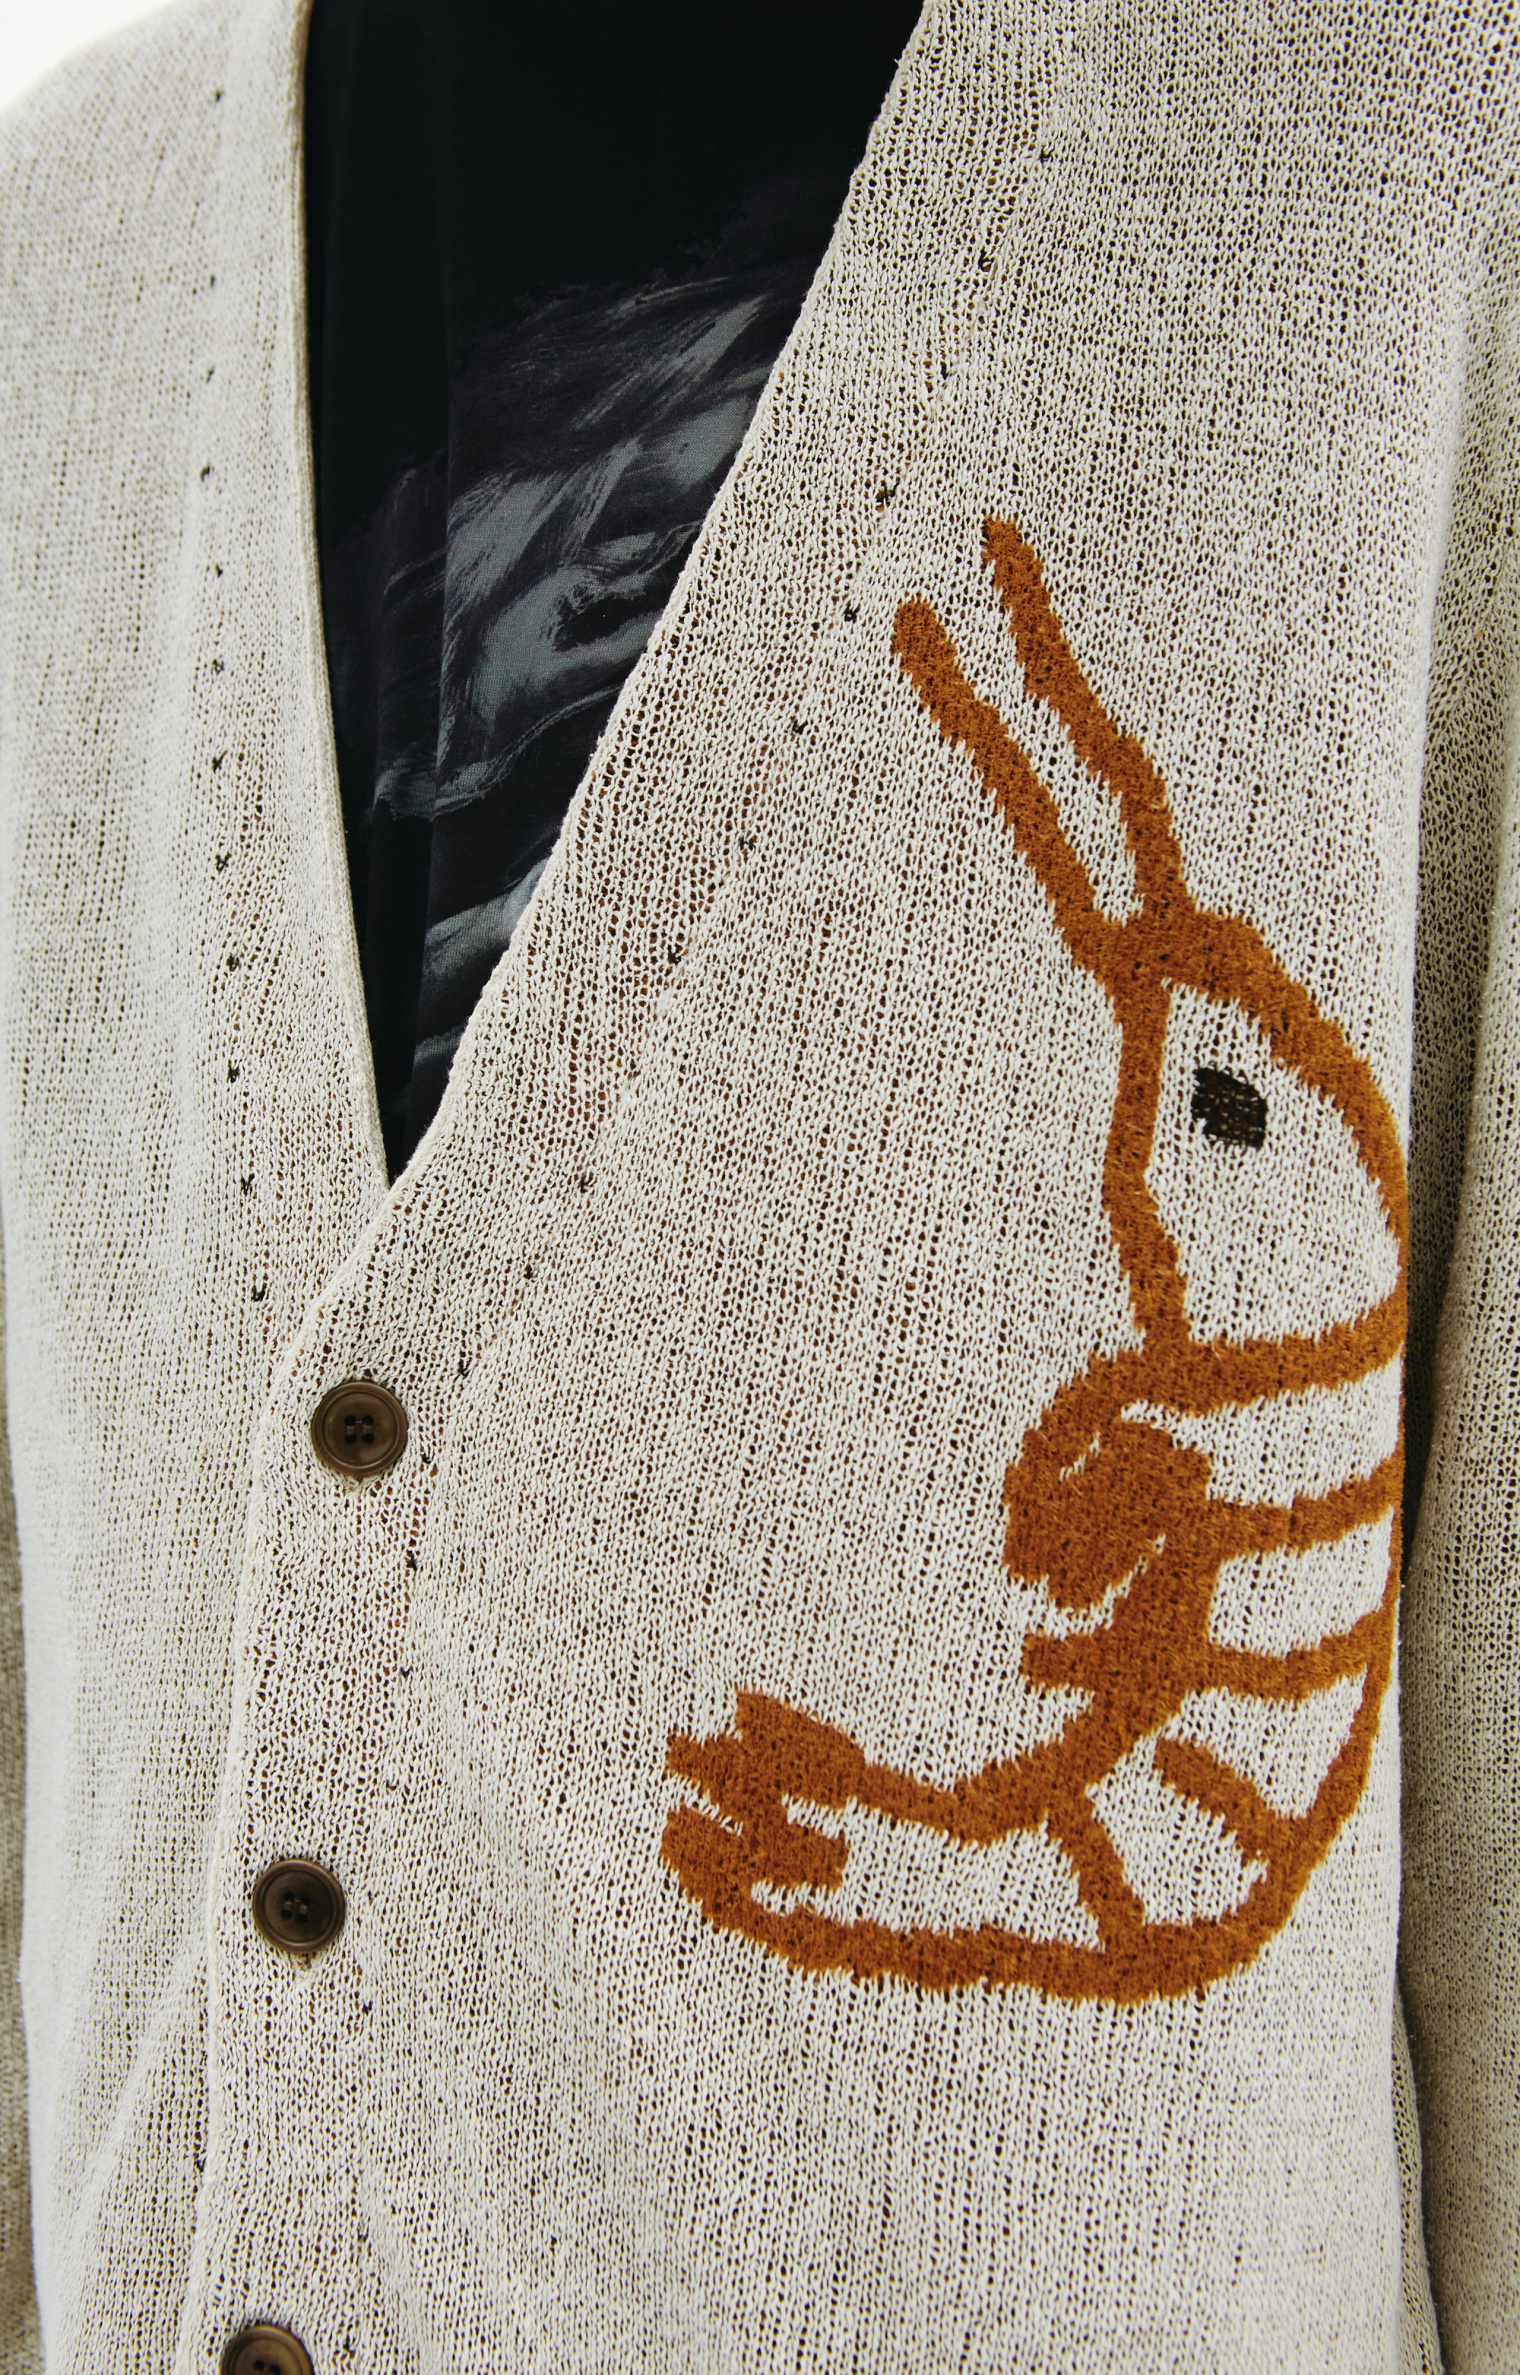 Yohji Yamamoto Shrimp knit cardigan